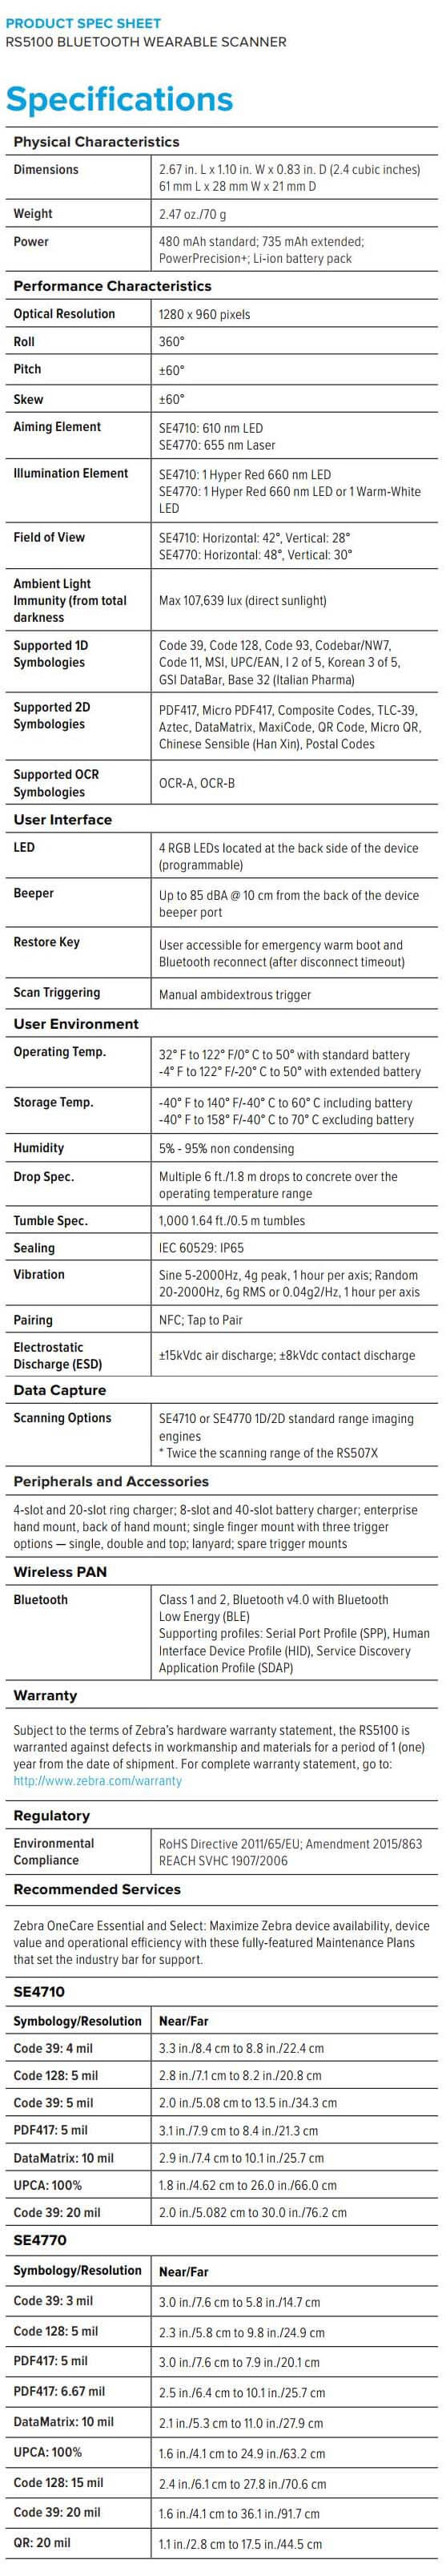 Zebra RS5100 data sheet